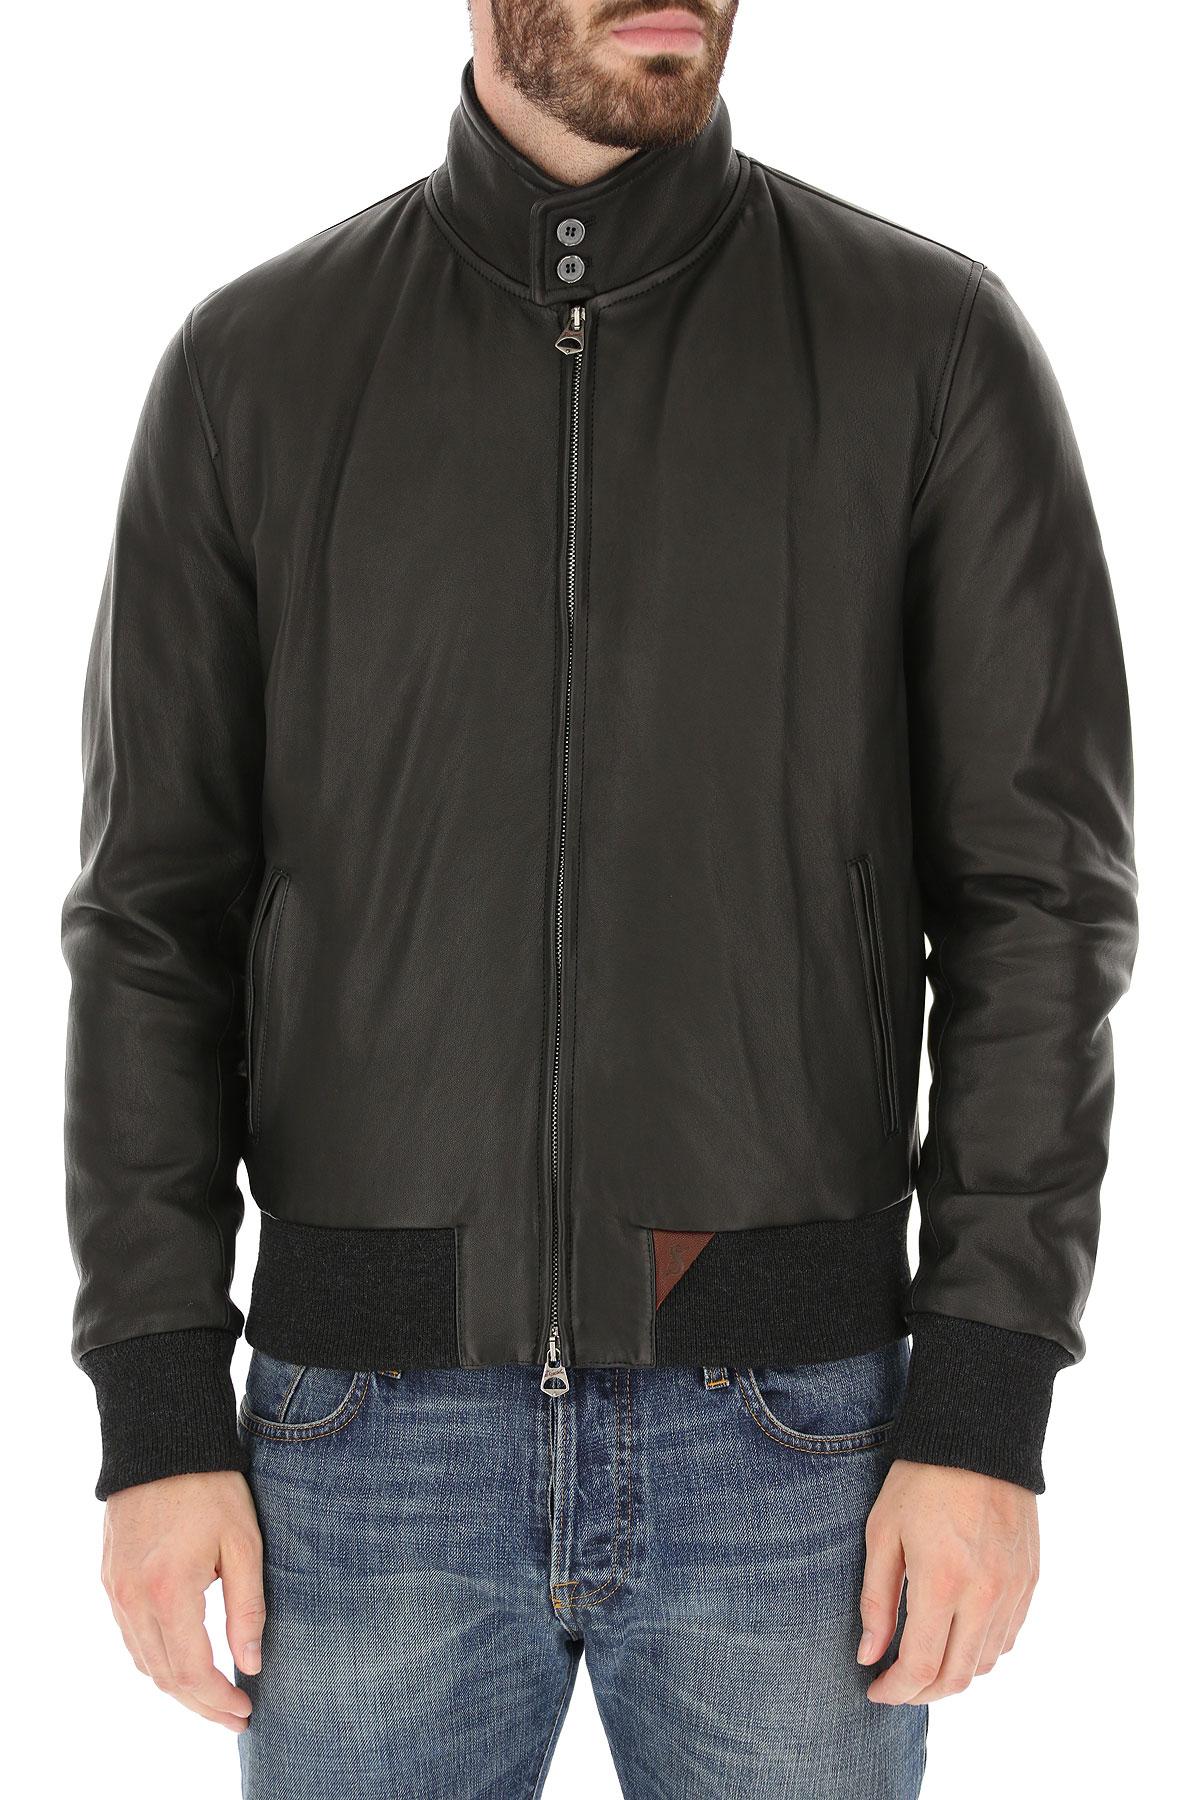 Stewart Leather Jacket For Men in Black for Men - Lyst